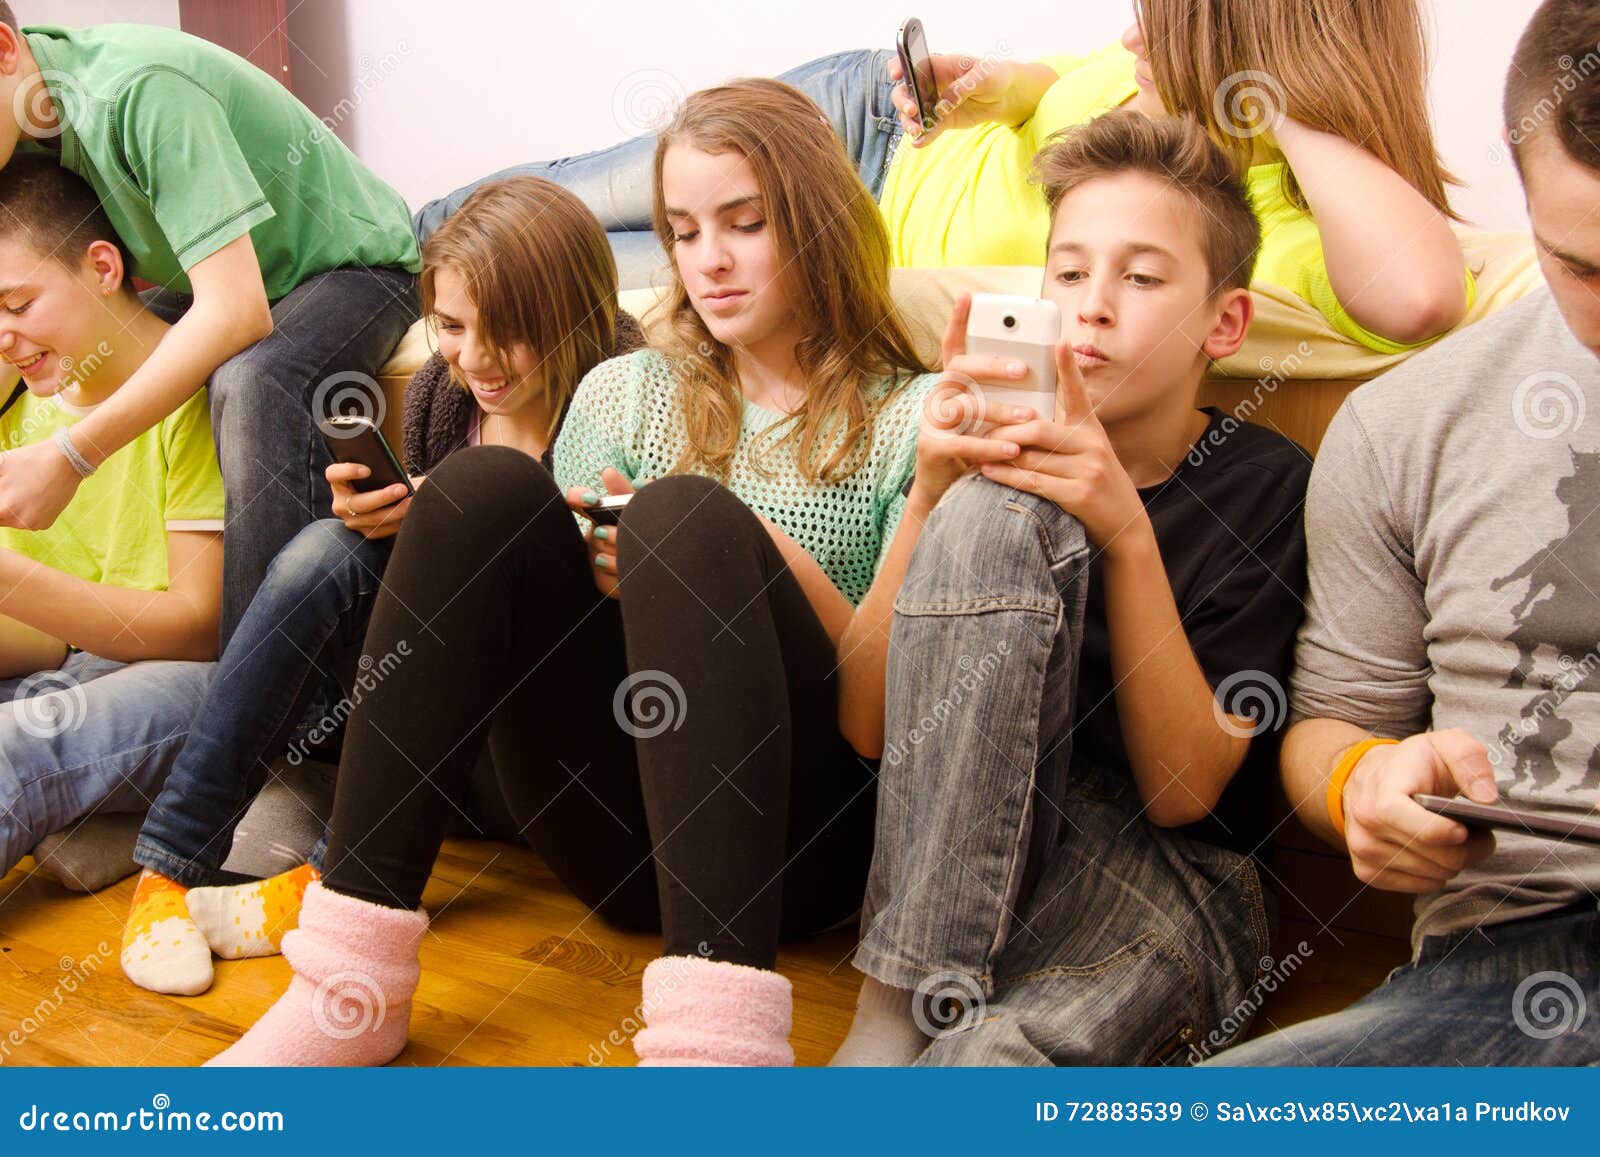 Сколько подростки сидят в телефоне. Подросток с телефоном. Подросток сидит в телефоне. Студент сидит в телефоне. Человек сидит в телефоне.